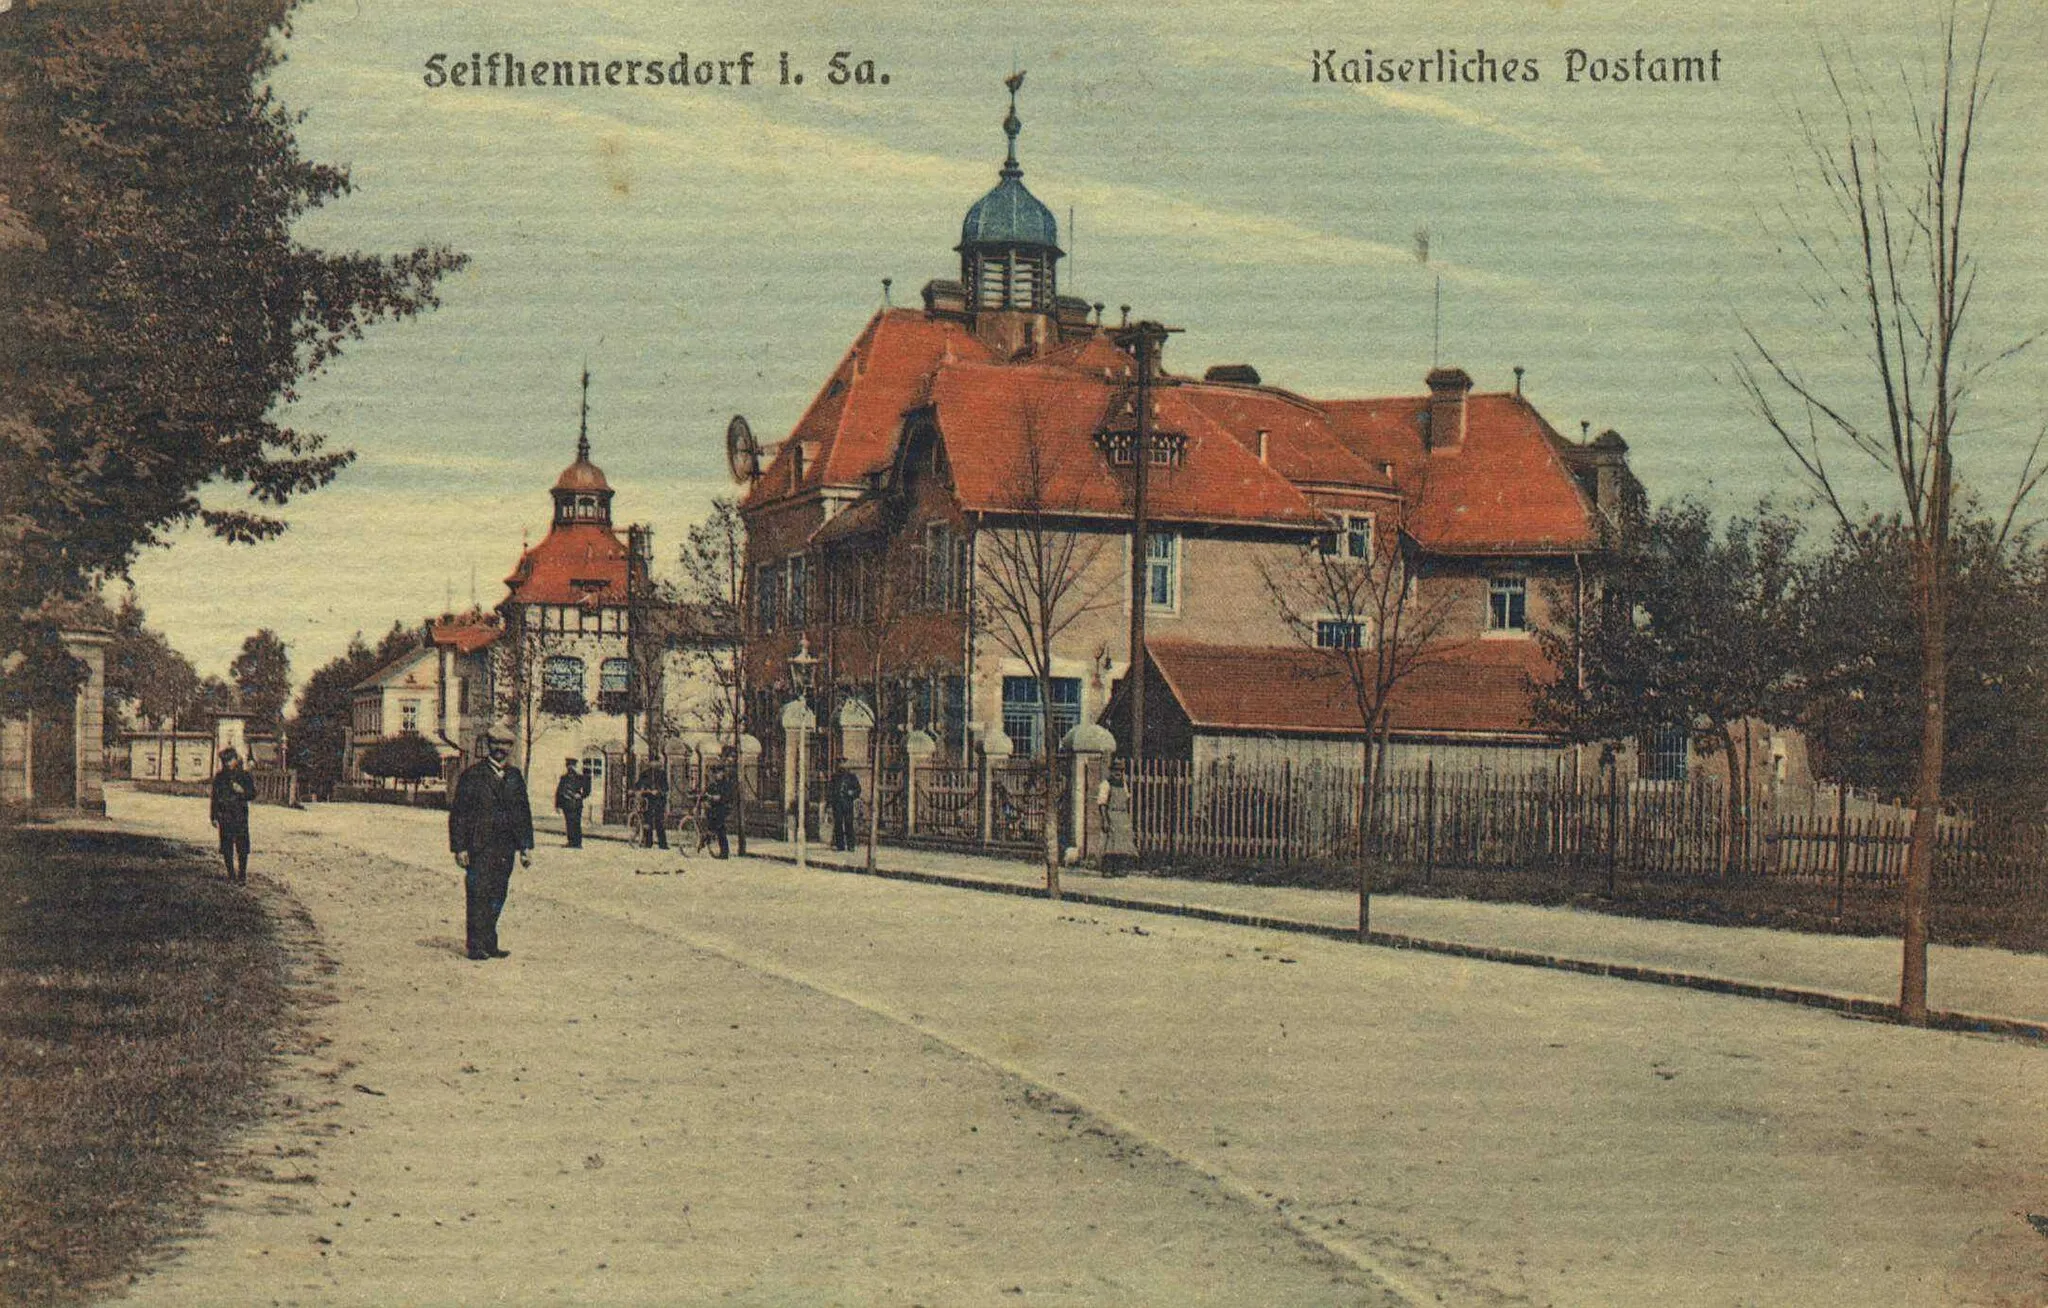 Photo showing: Das Kaiserliche Postamt in Seifhennersdorf in Sachsen, Deutschland.